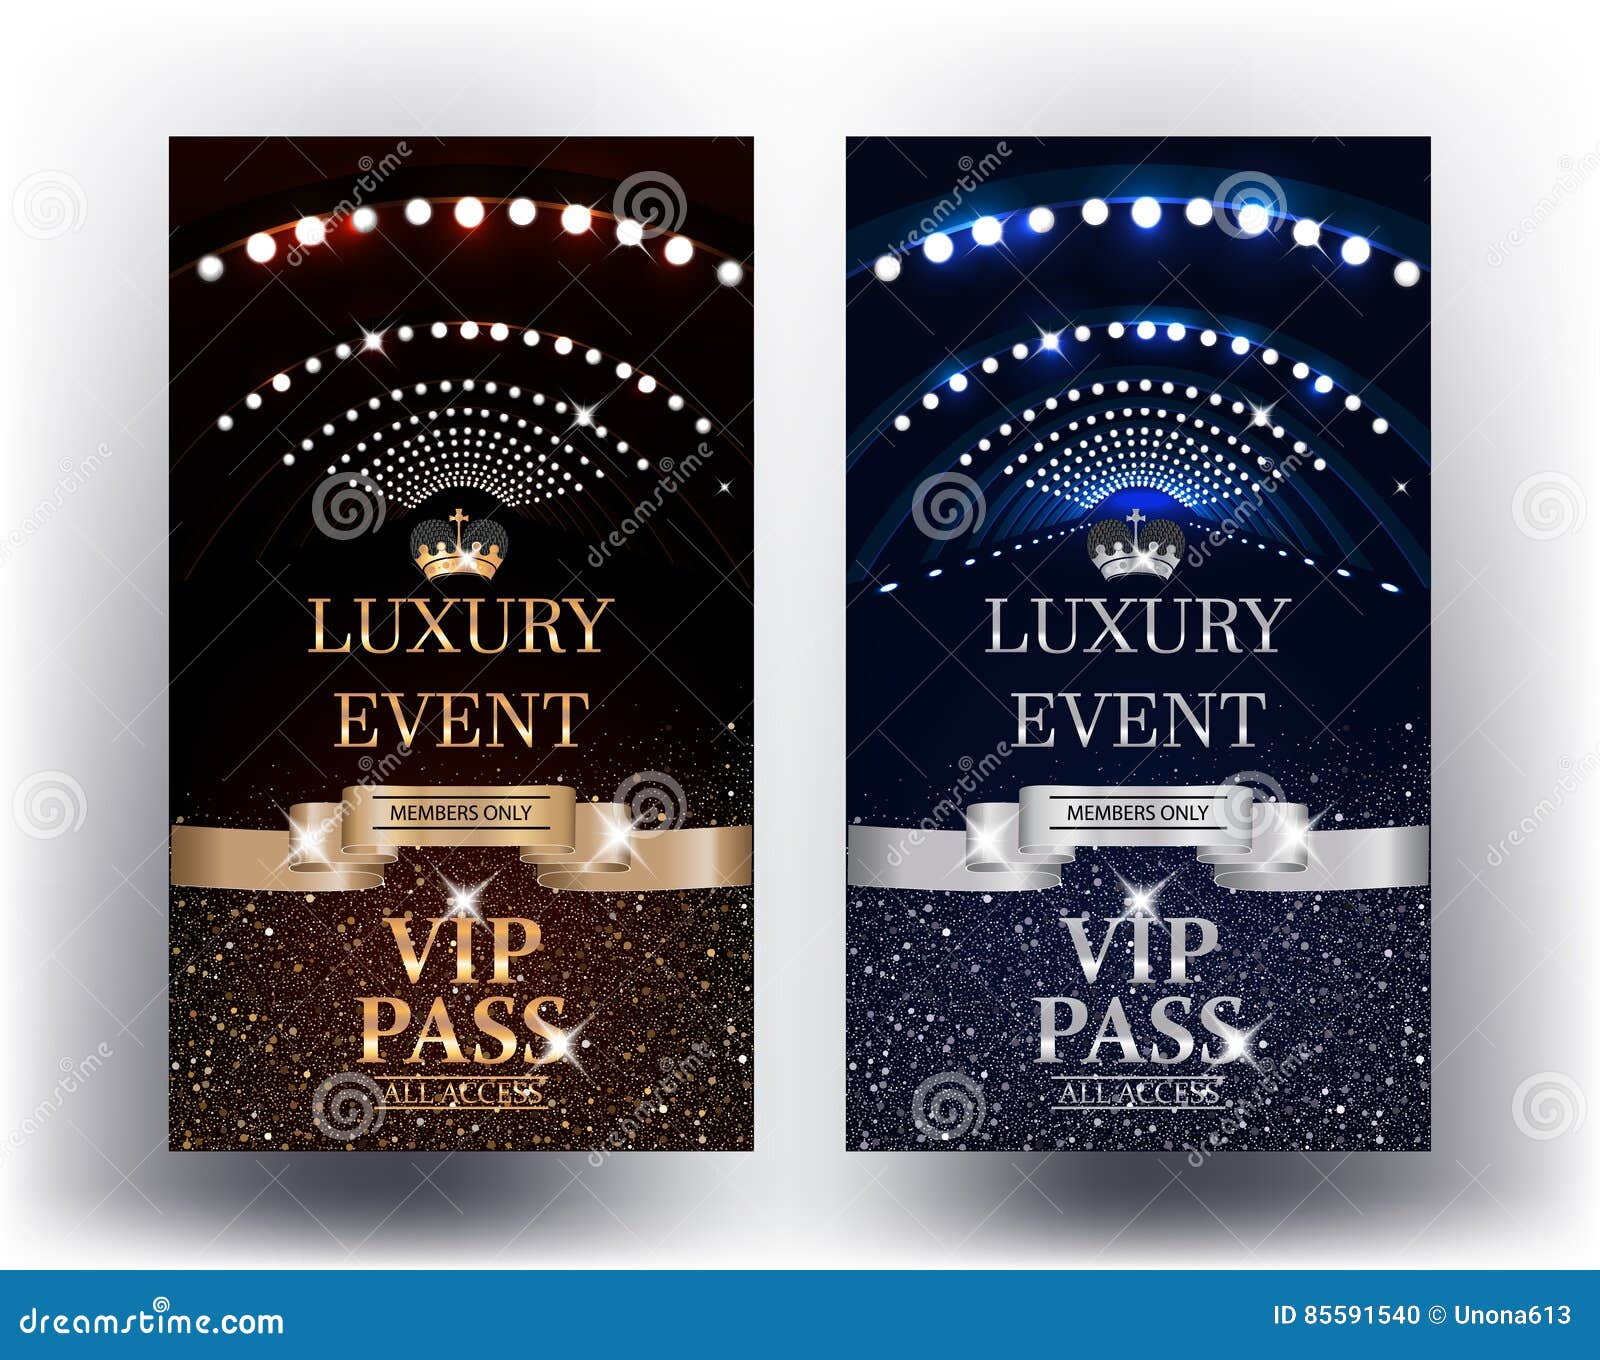 luxury event elegant vertical vip passes